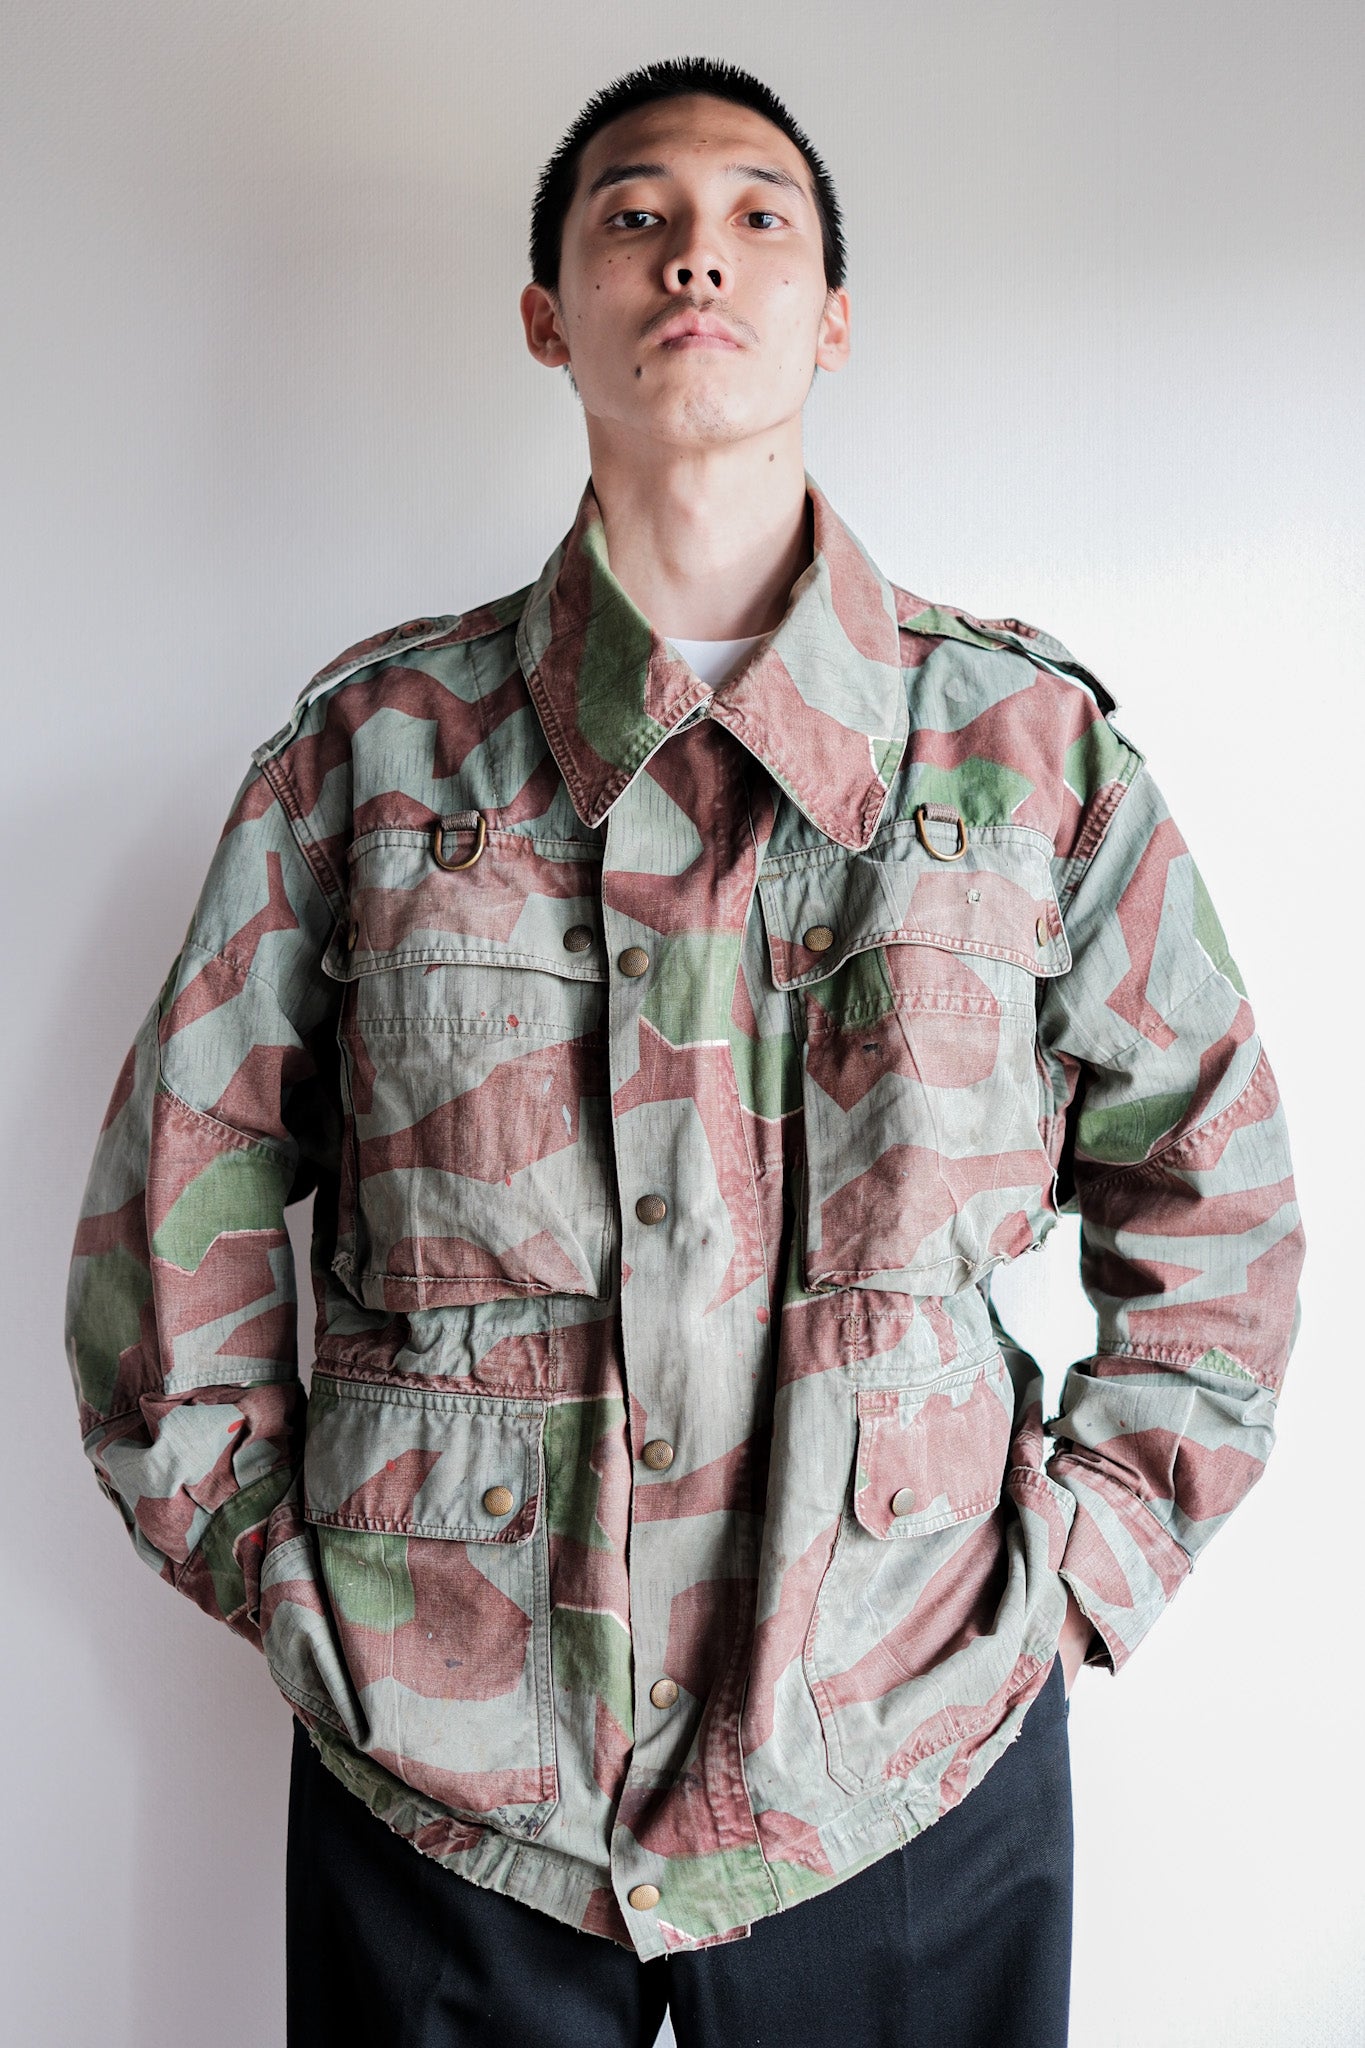 L'armée allemande Splinter camouflage Paratrooper jacket